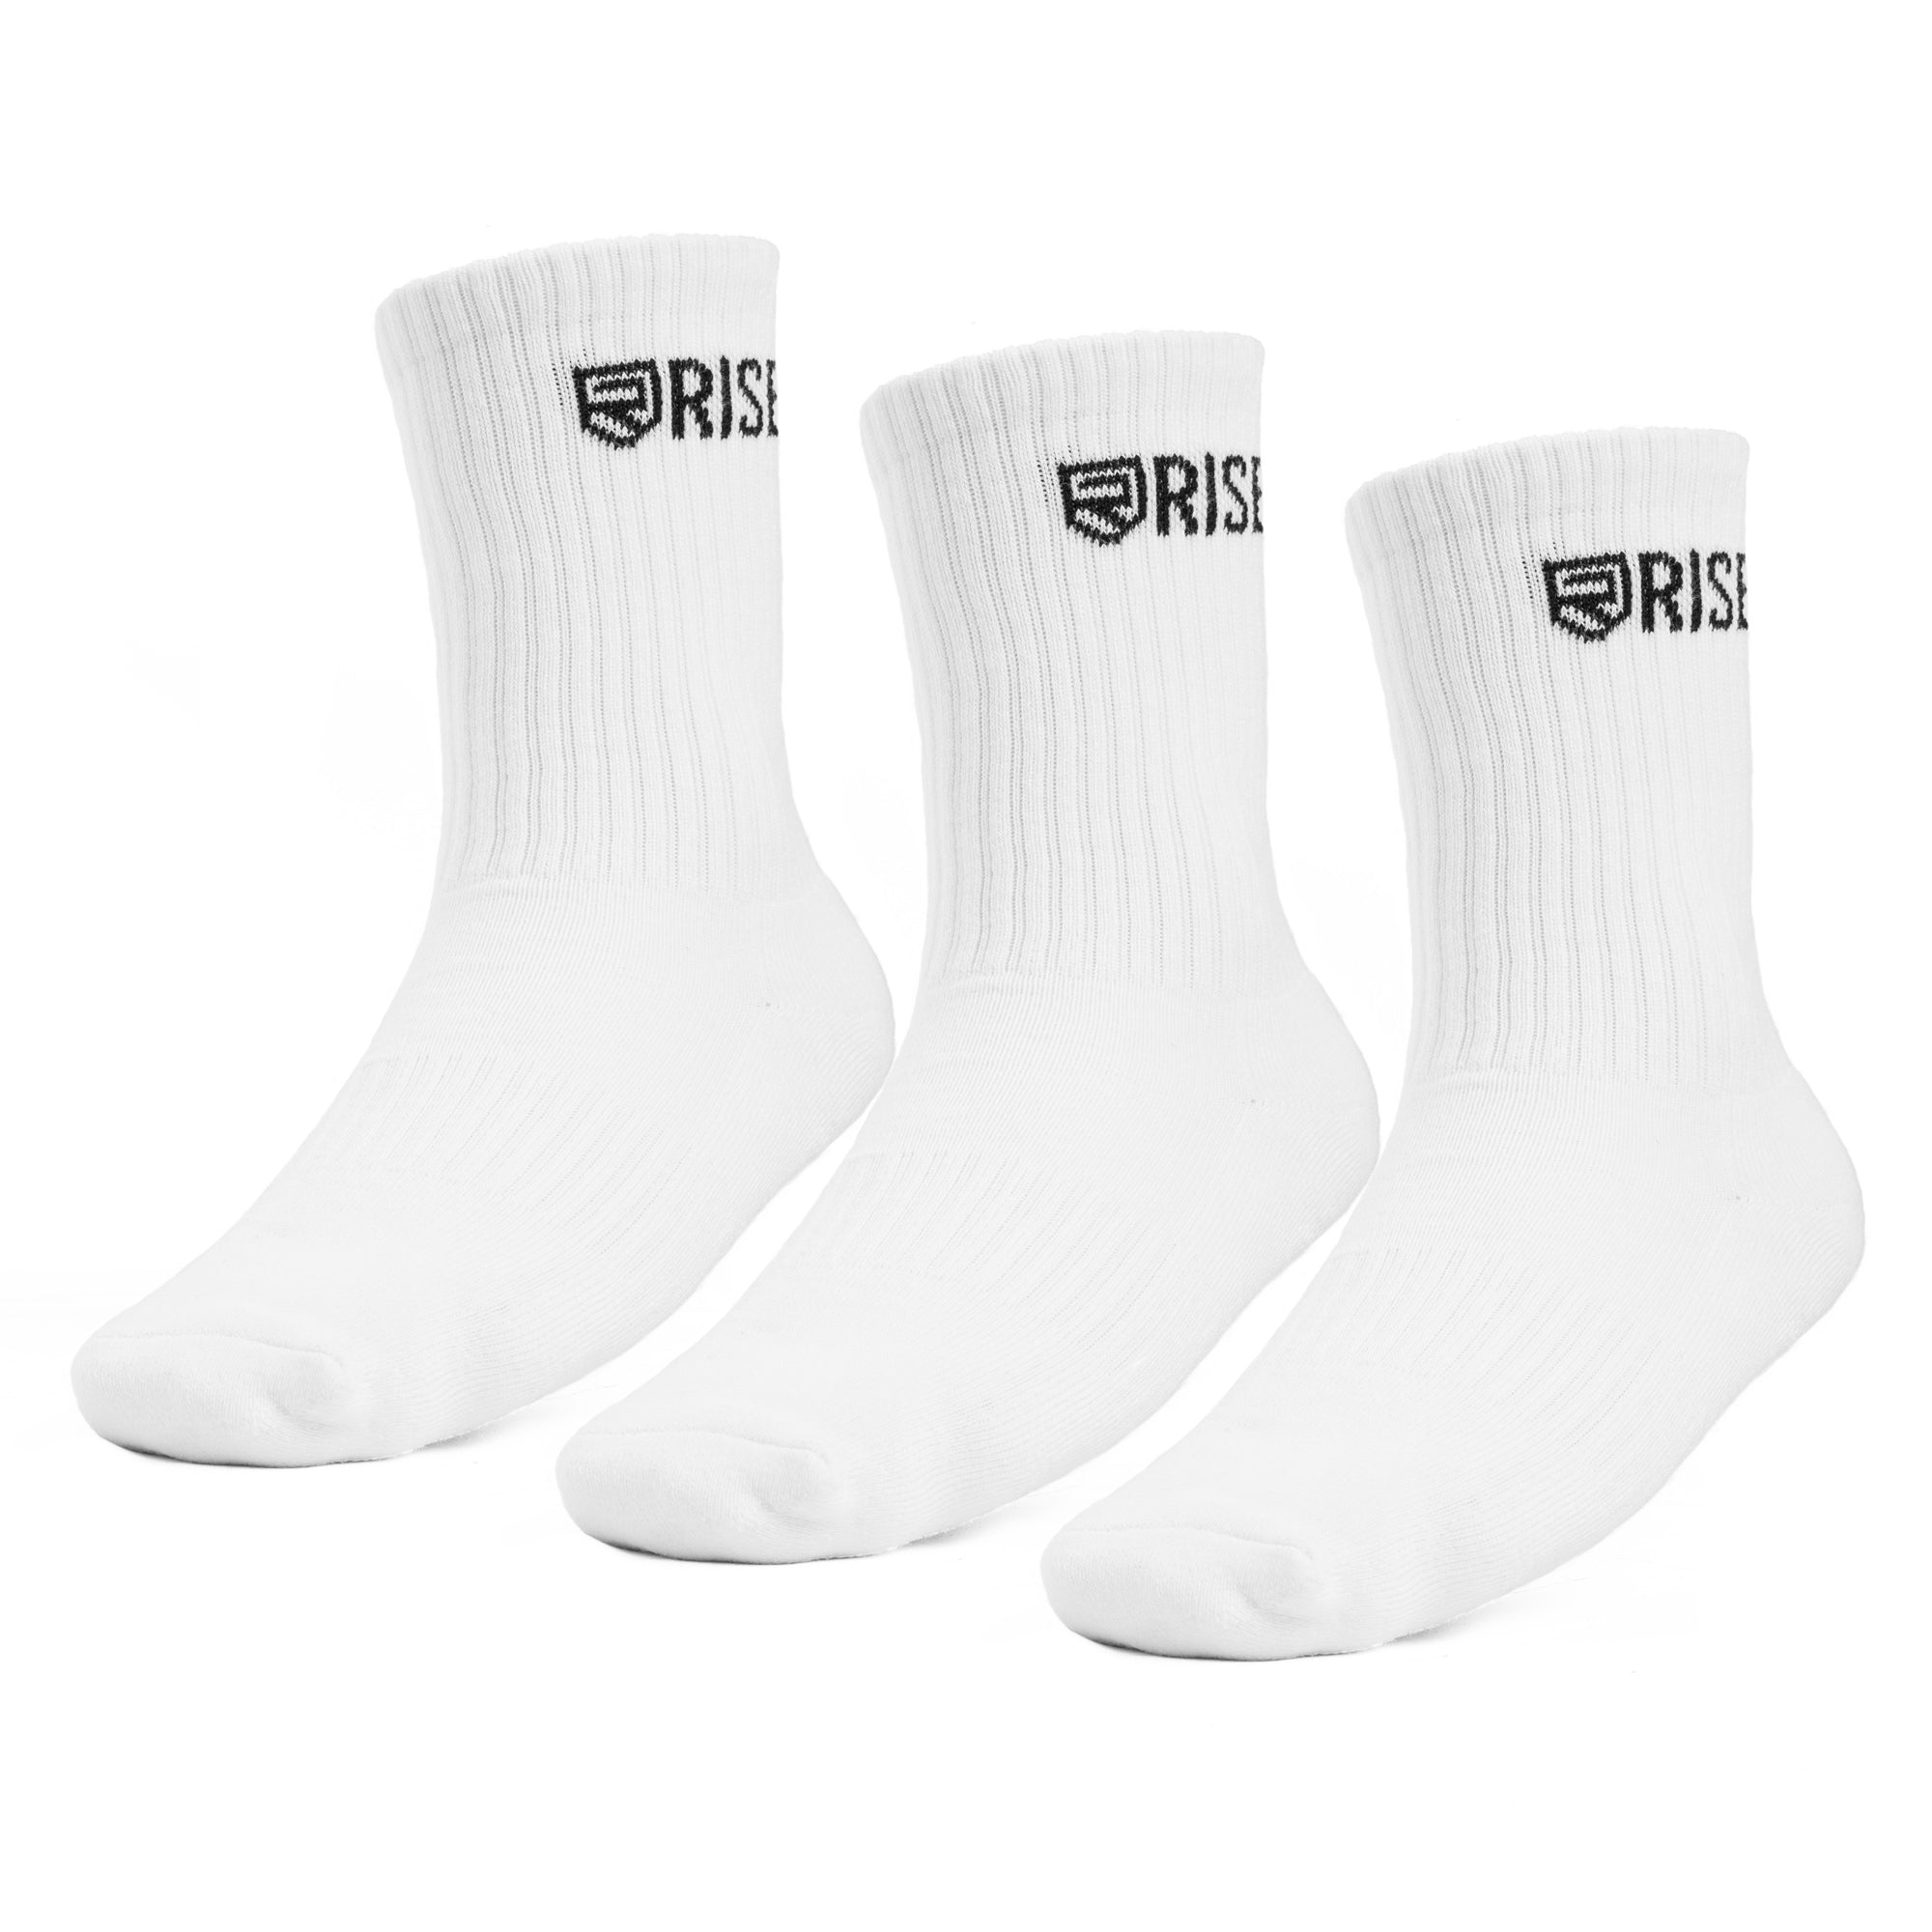 Rise Crew Socks – White (3pk)